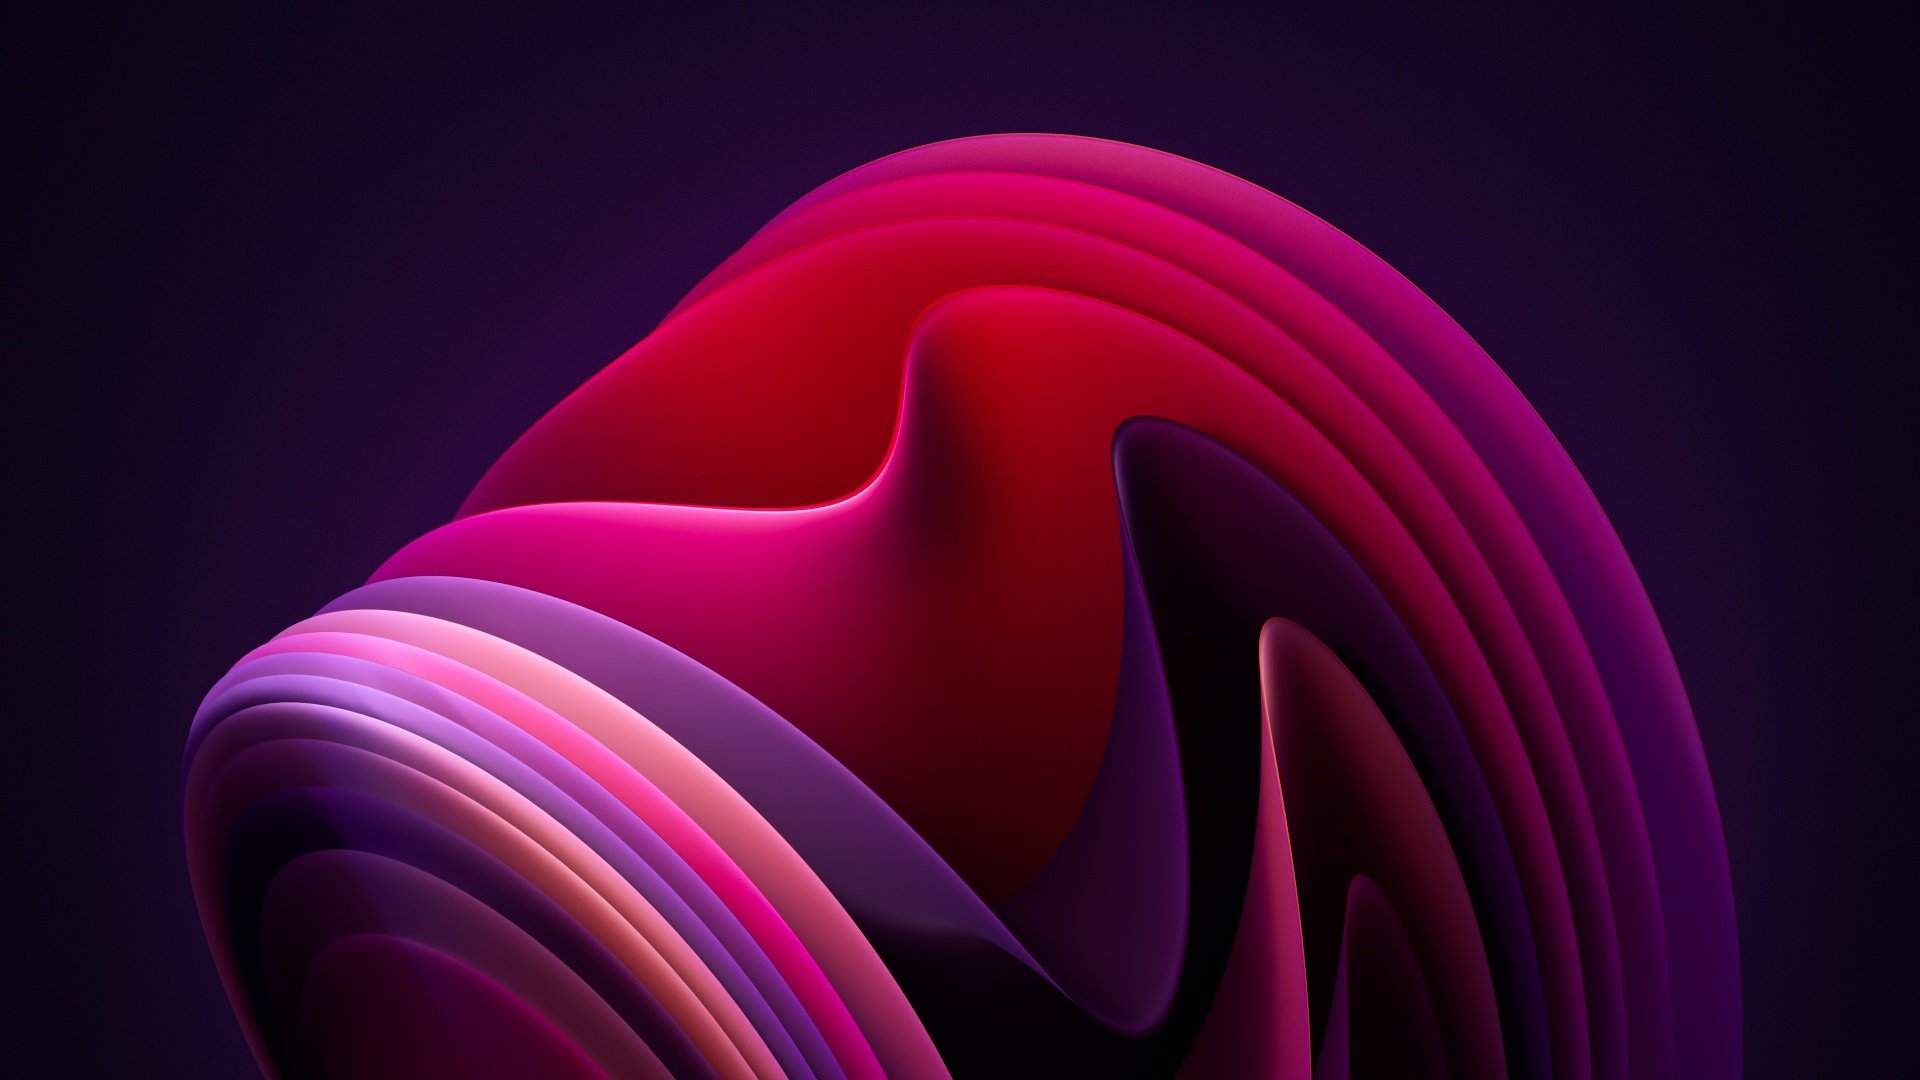 Windows 11 Wallpaper 4K, Flow, Dark Mode, Dark background, Pink, Abstract